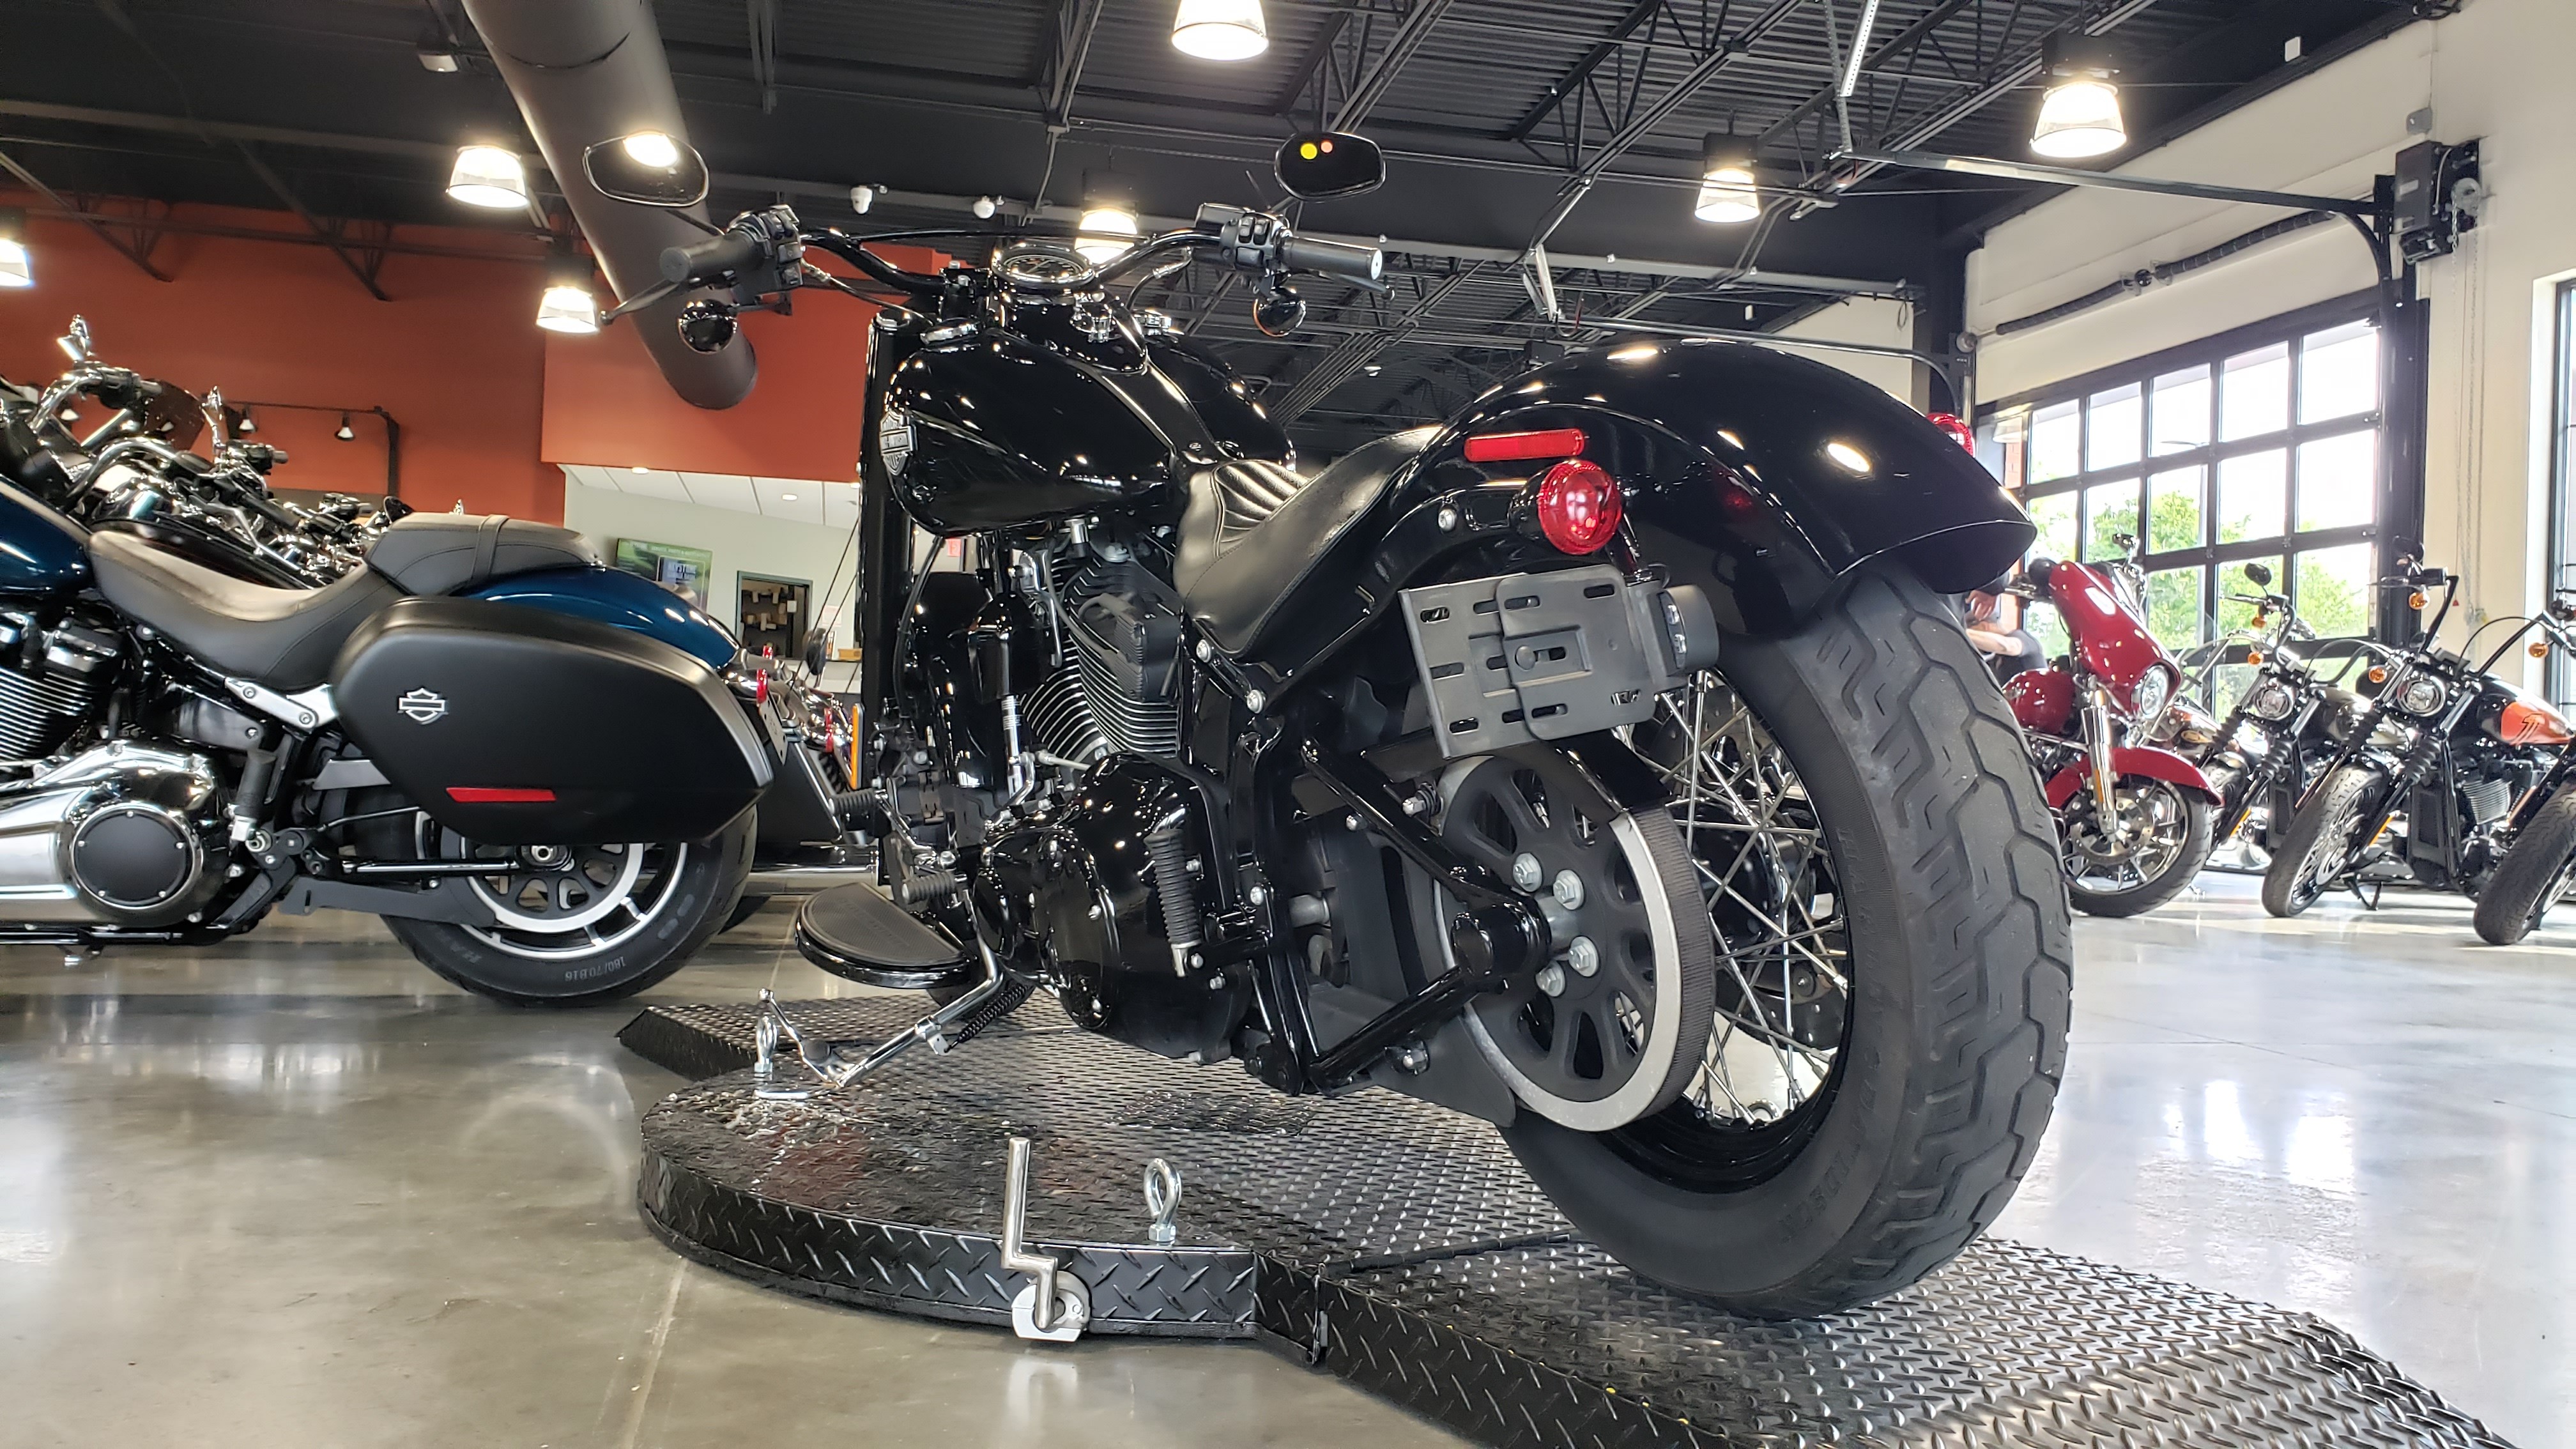 2016 Harley-Davidson S-Series Slim at Keystone Harley-Davidson